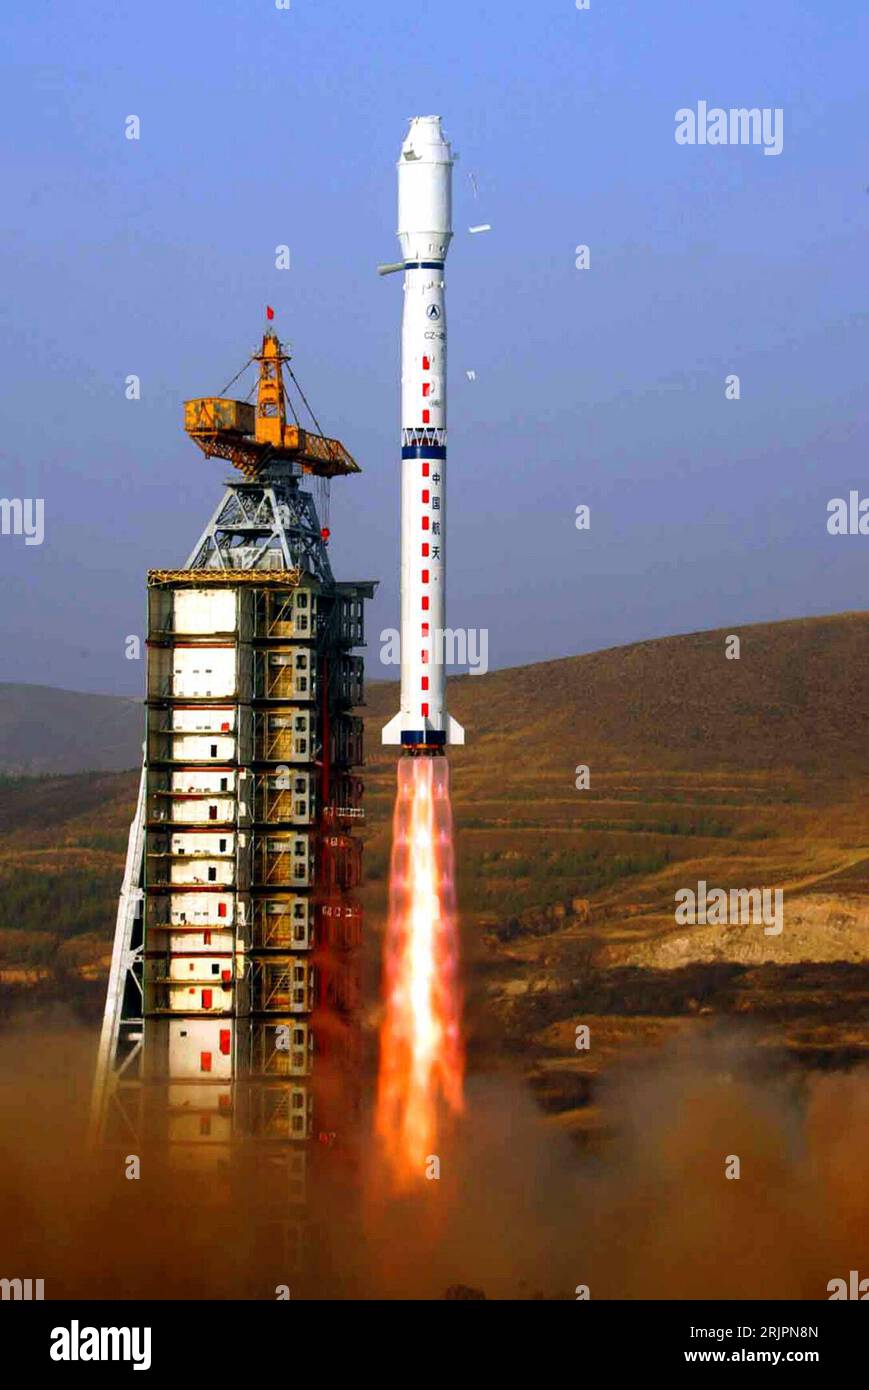 Bildnummer: 51212753  Datum: 26.04.2006  Copyright: imago/Xinhua Start der Trägerrakete Langer Marsch 4-B - an Bord ein Satellit zur Erderkundung - von der Abschussrampe des Taiyuan Satellite Center - PUBLICATIONxNOTxINxCHN, Objekte; 2006, Taiyuan, Shanxi, Raumfahrt, 4B, Long March, Chang Zheng, LM, CZ, Trägerraketen, Rakete, Raketen, Starts, startet, startend, Raketenstart, Raketenstarts, , Raumfahrtzentrum, , Rampe, Rampen, Abschussrampe, Abschussrampen, Raketenabschussrampe, Raketenabschussrampen, Qualm, Rauch; , hoch, Kbdig, Einzelbild, China,  , / Fotostory Stock Photo